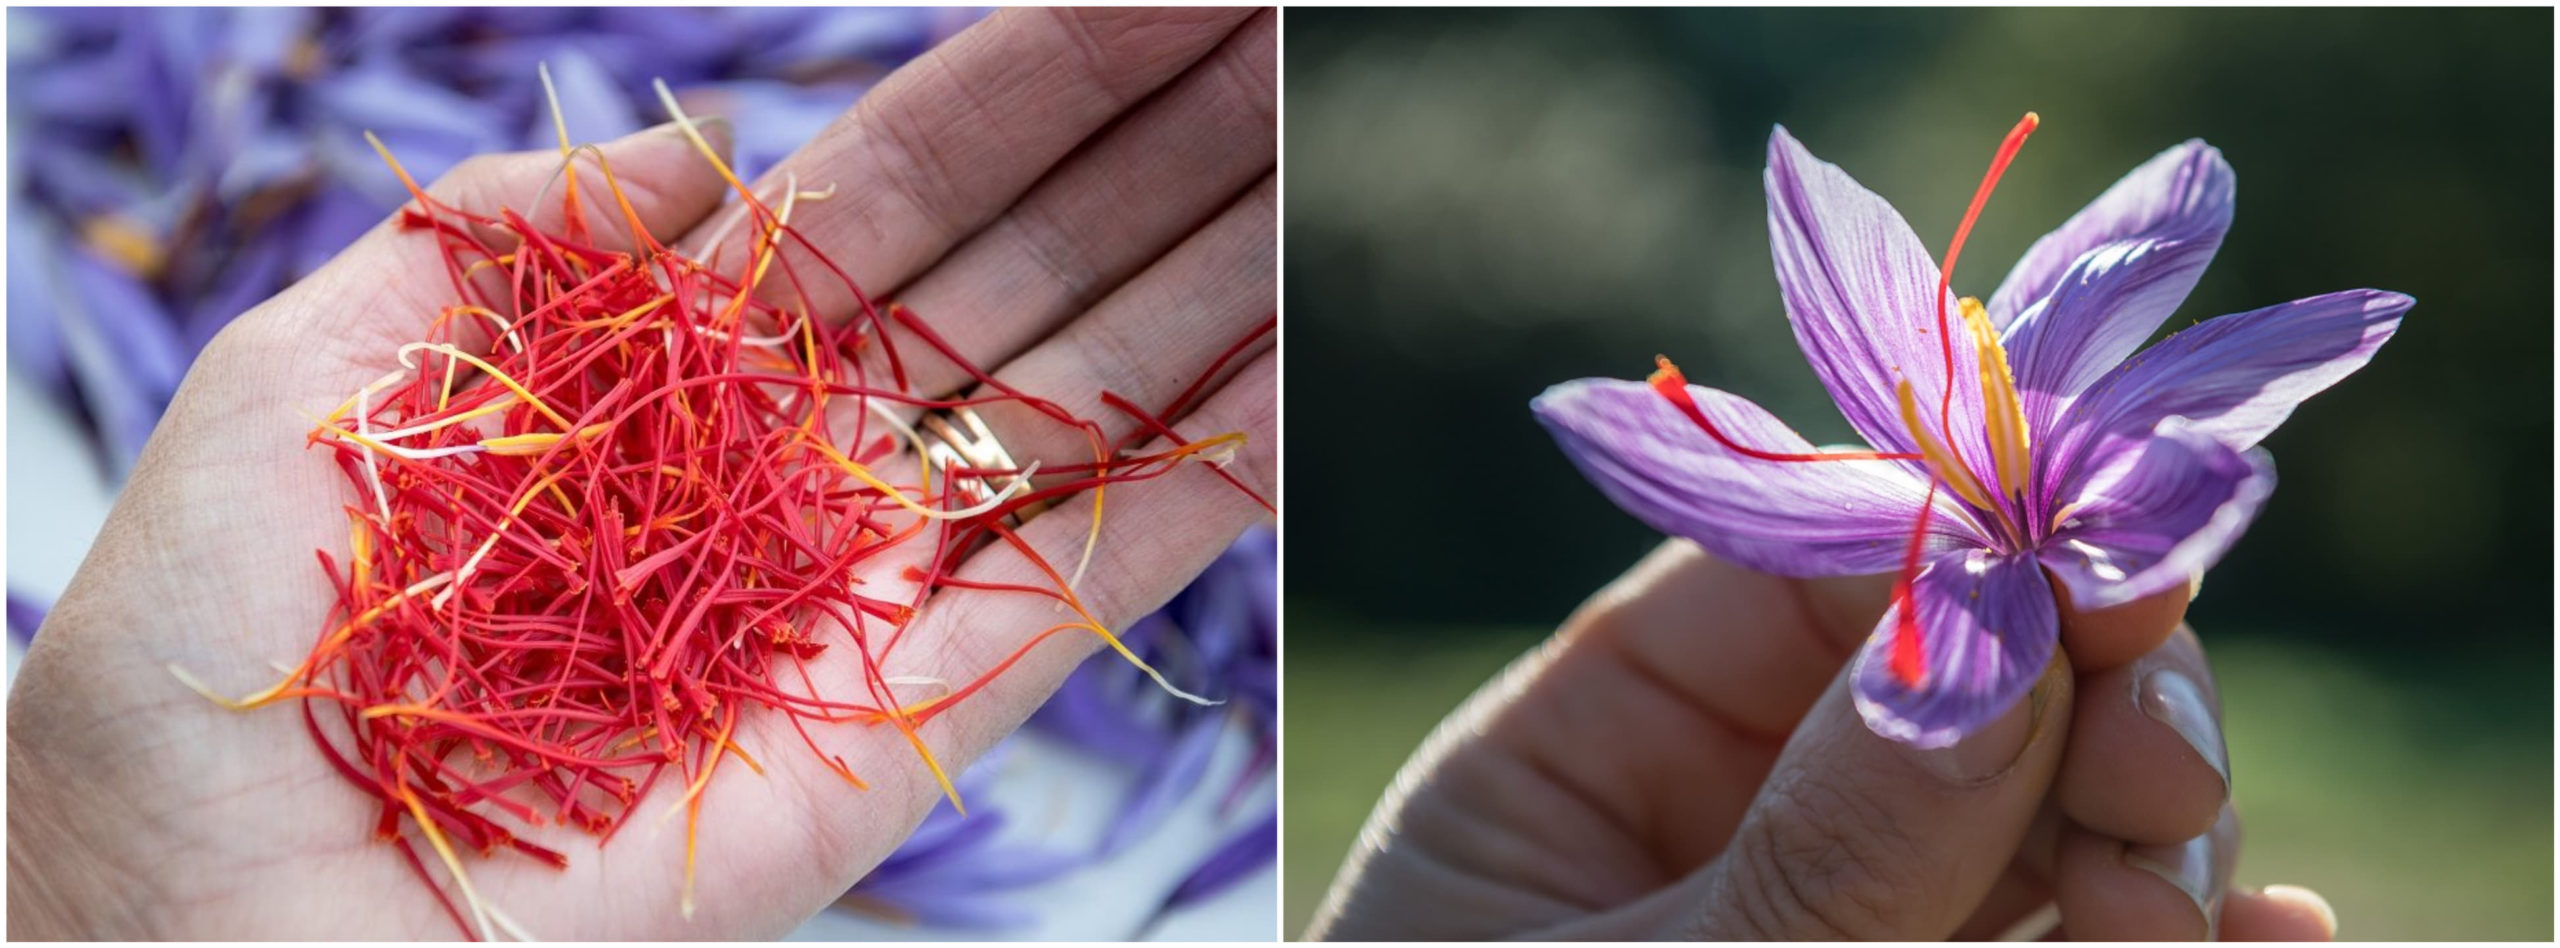 L'entreprise : Filaments de safran et fleur de crocus de l'entreprise Cynfael le prince du safran